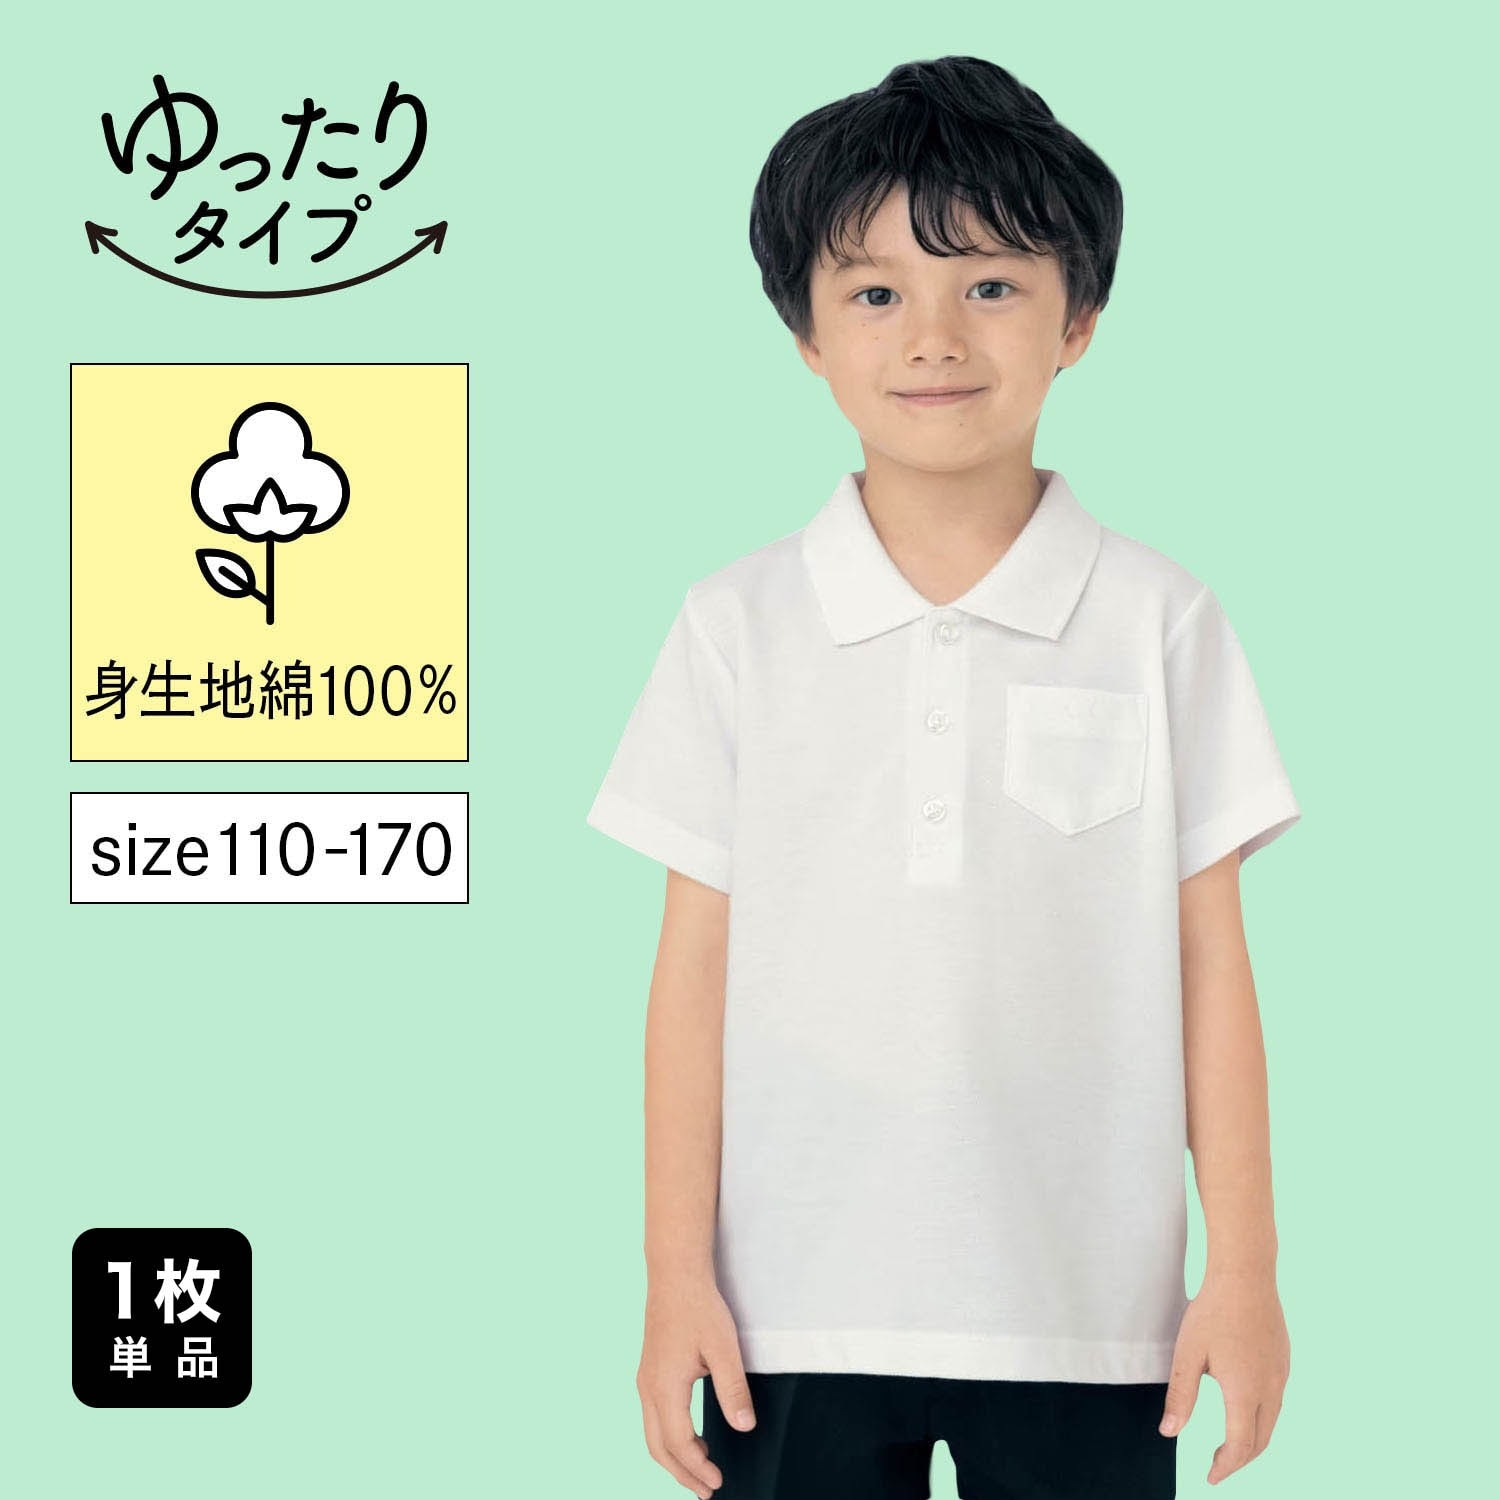 【ジータ/GITA】<ベルポロ>半袖ポロシャツ(ゆったり) 【制服 白】